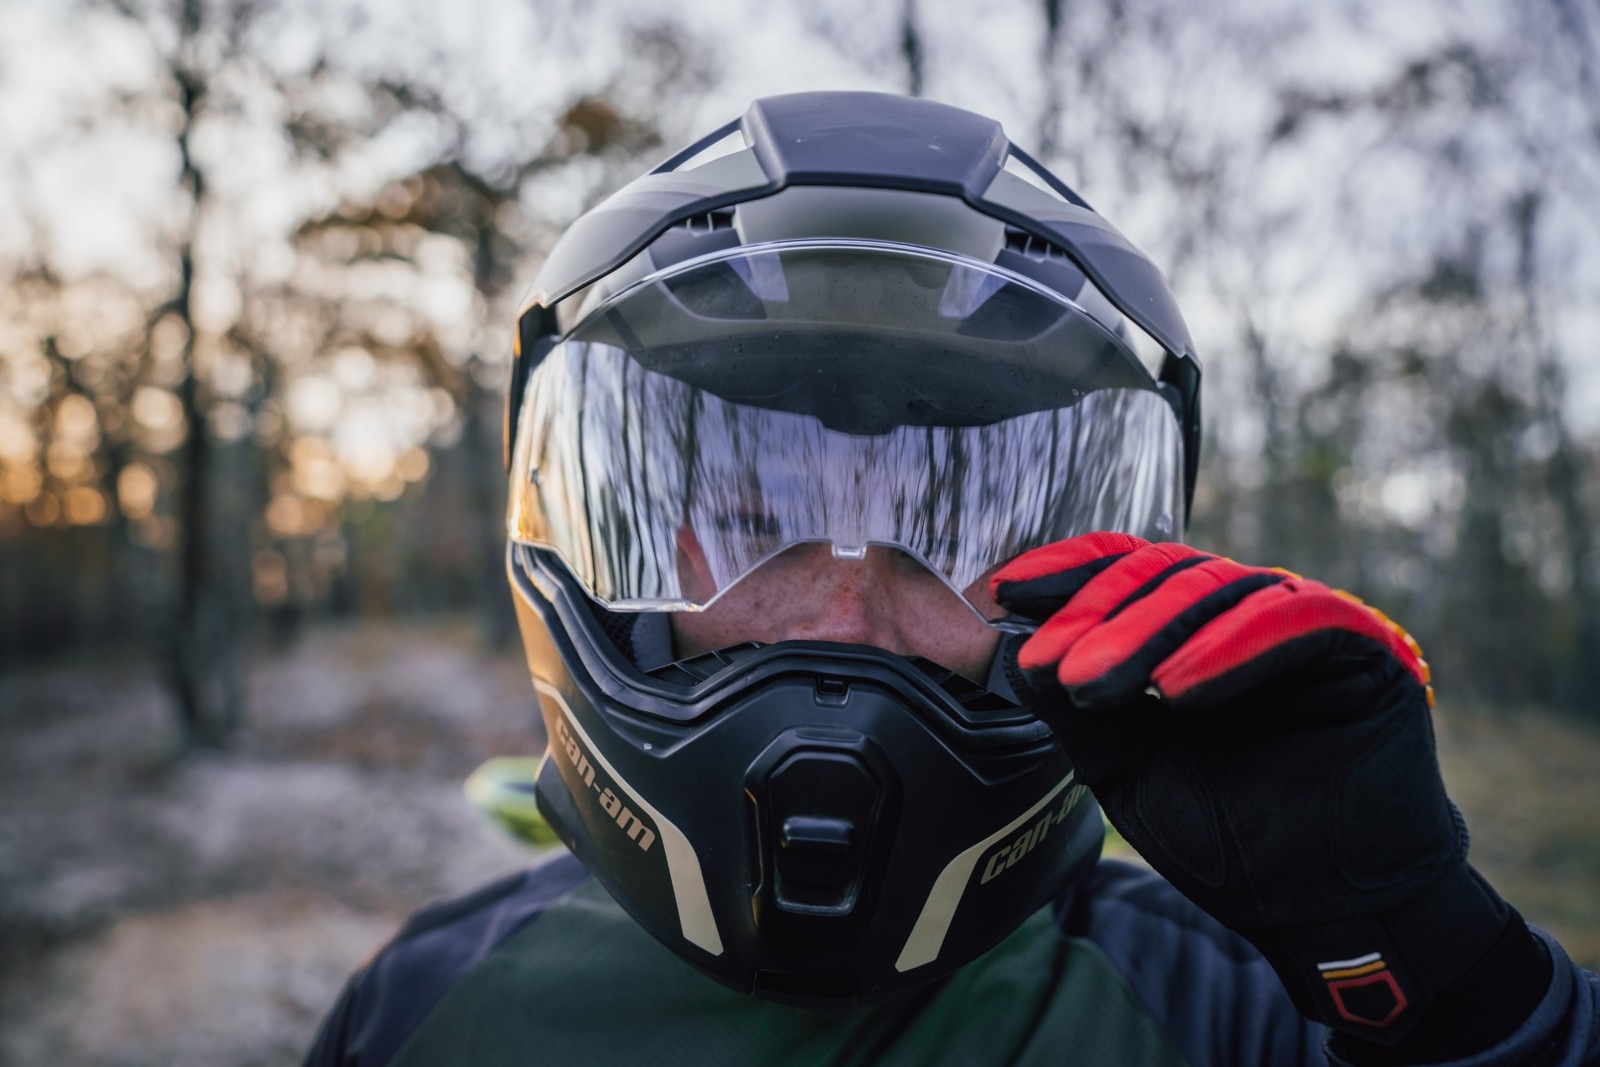  Primo piano di un motociclista che apre la visiera del casco Can-Am Exome